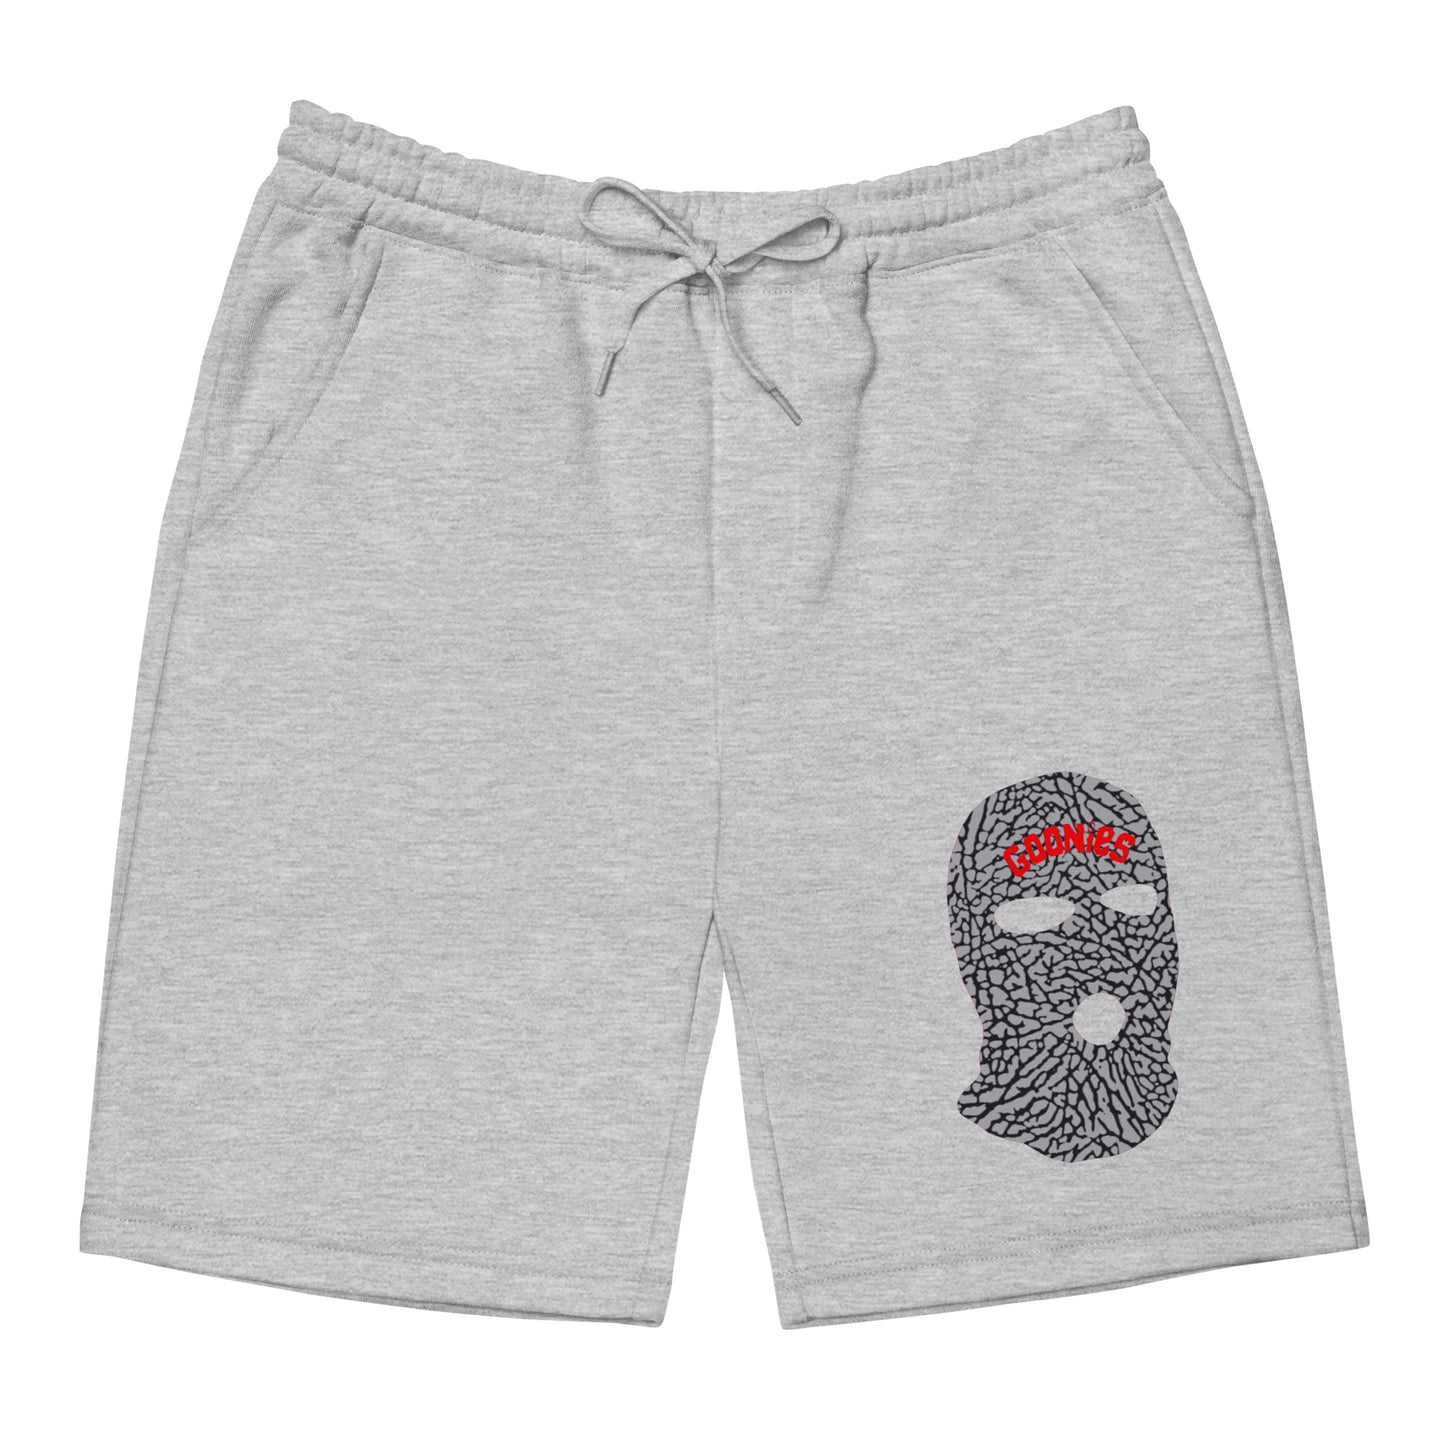 Goonies Logo Fleece Shorts - Elephant Print